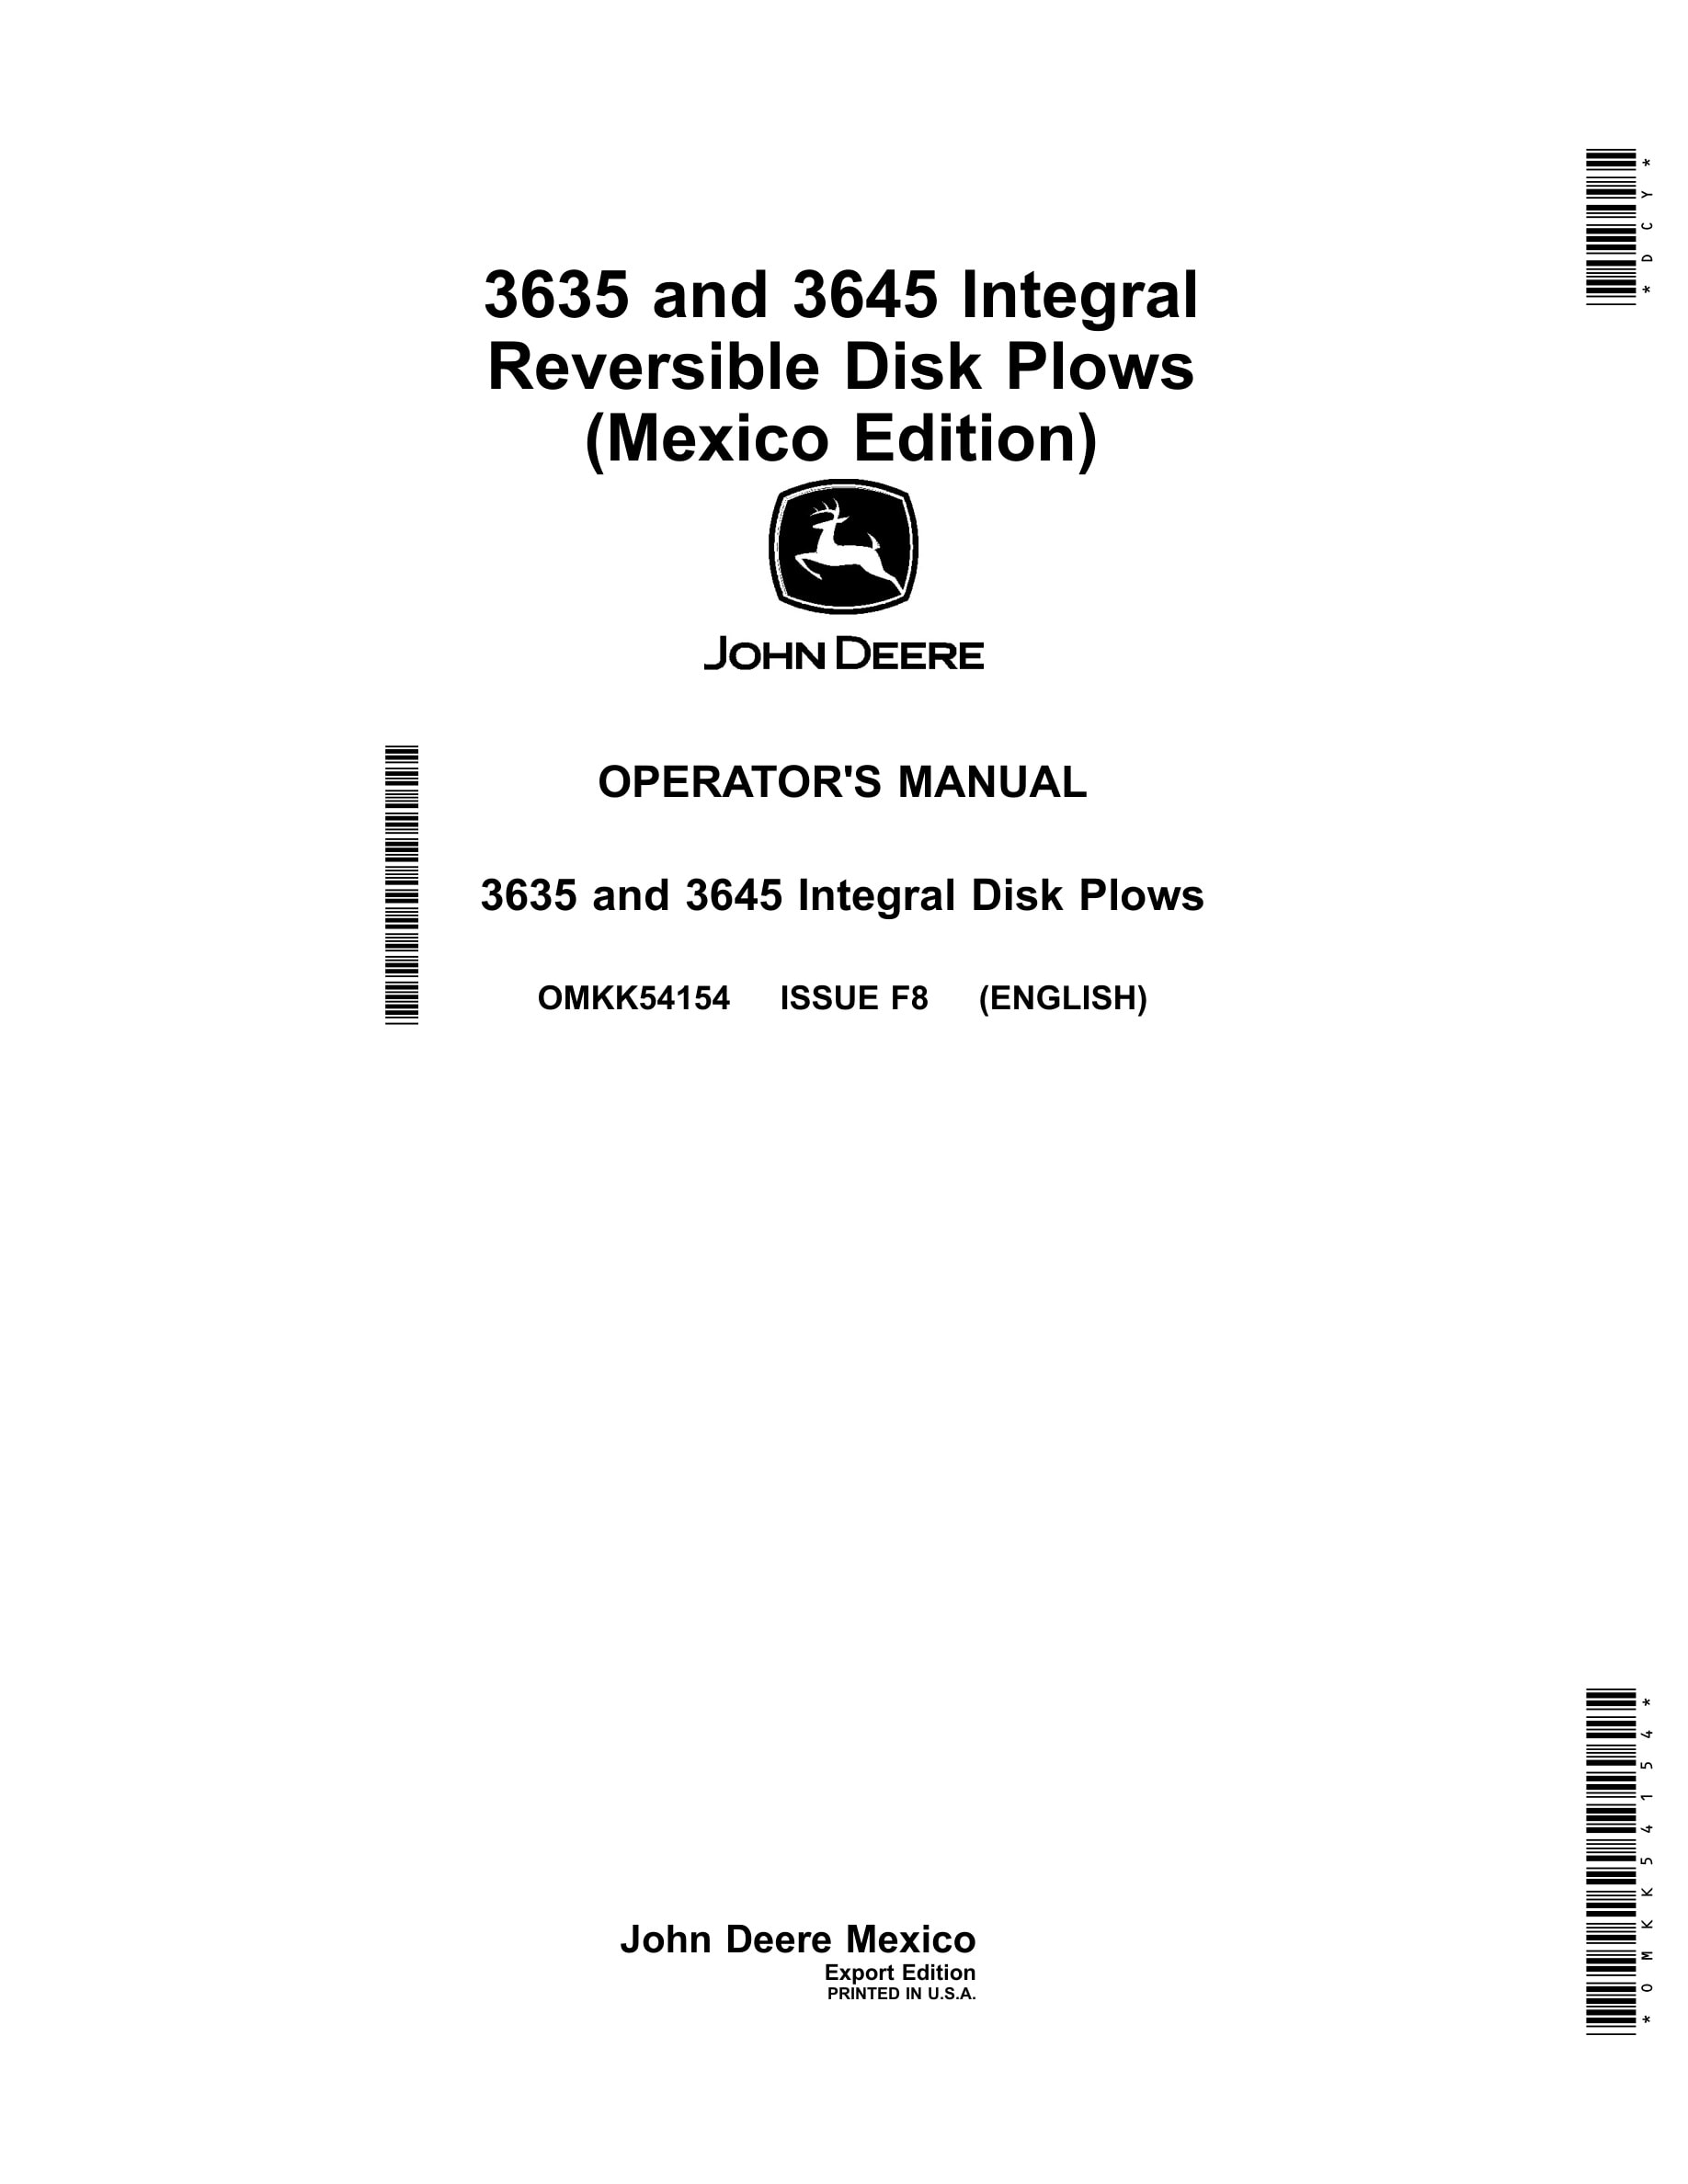 John Deere 3635 and 3645 Integral Disk Plows Operator Manual OMKK54154-1